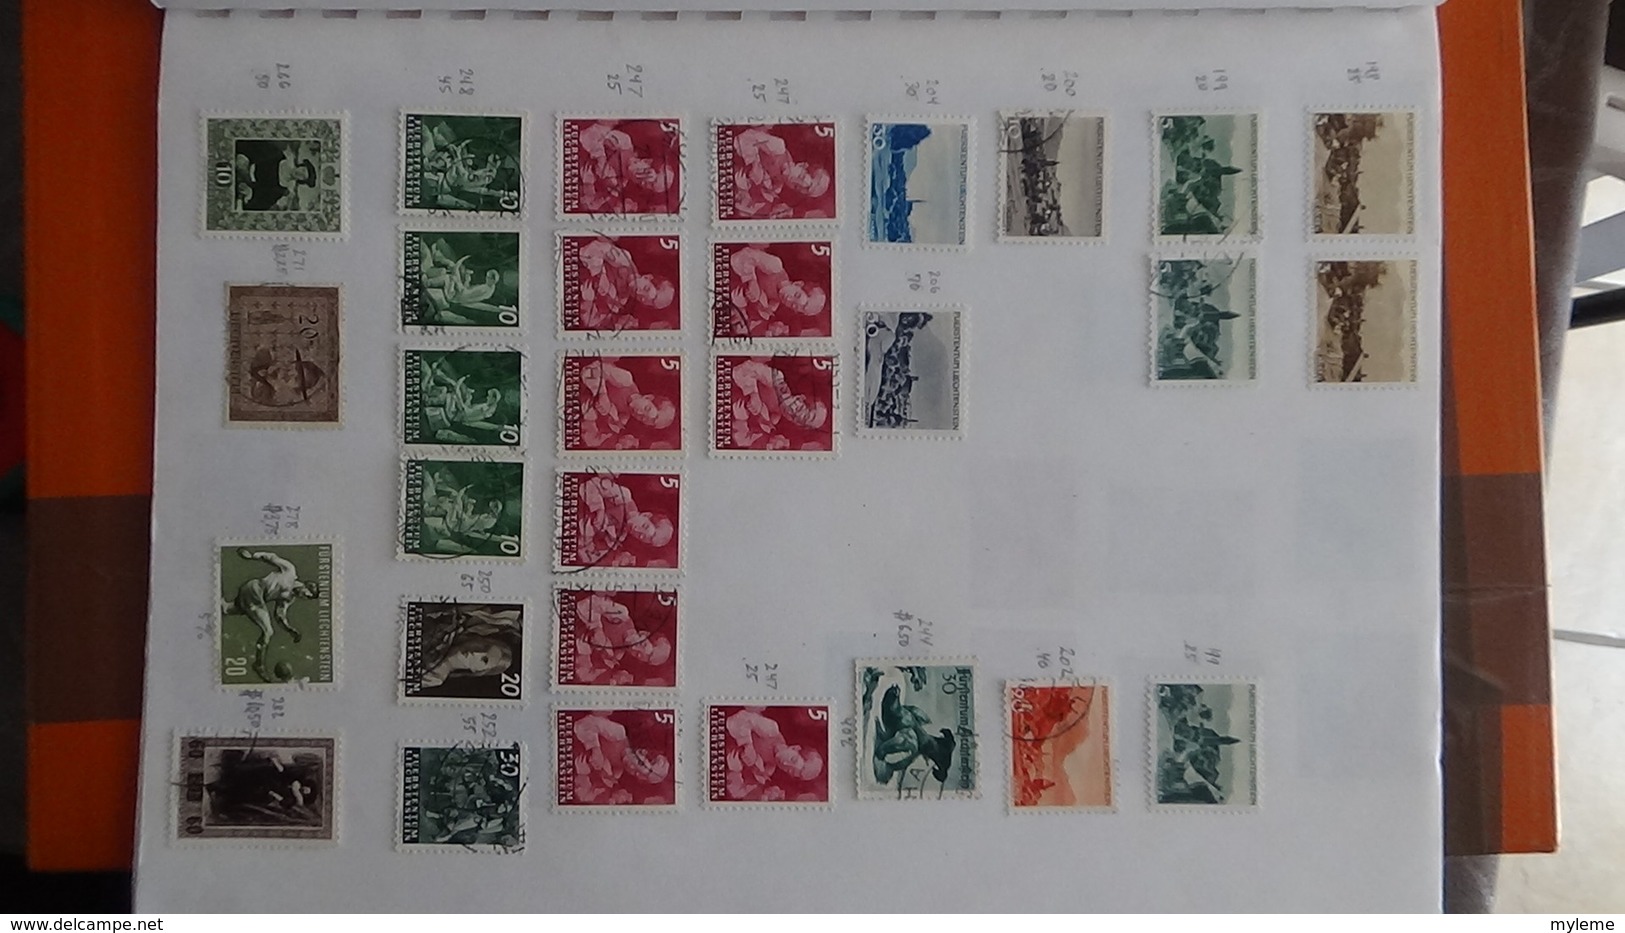 A249 Cahier de timbres de Suisse et Liechtenstein !!! Voir commentaires